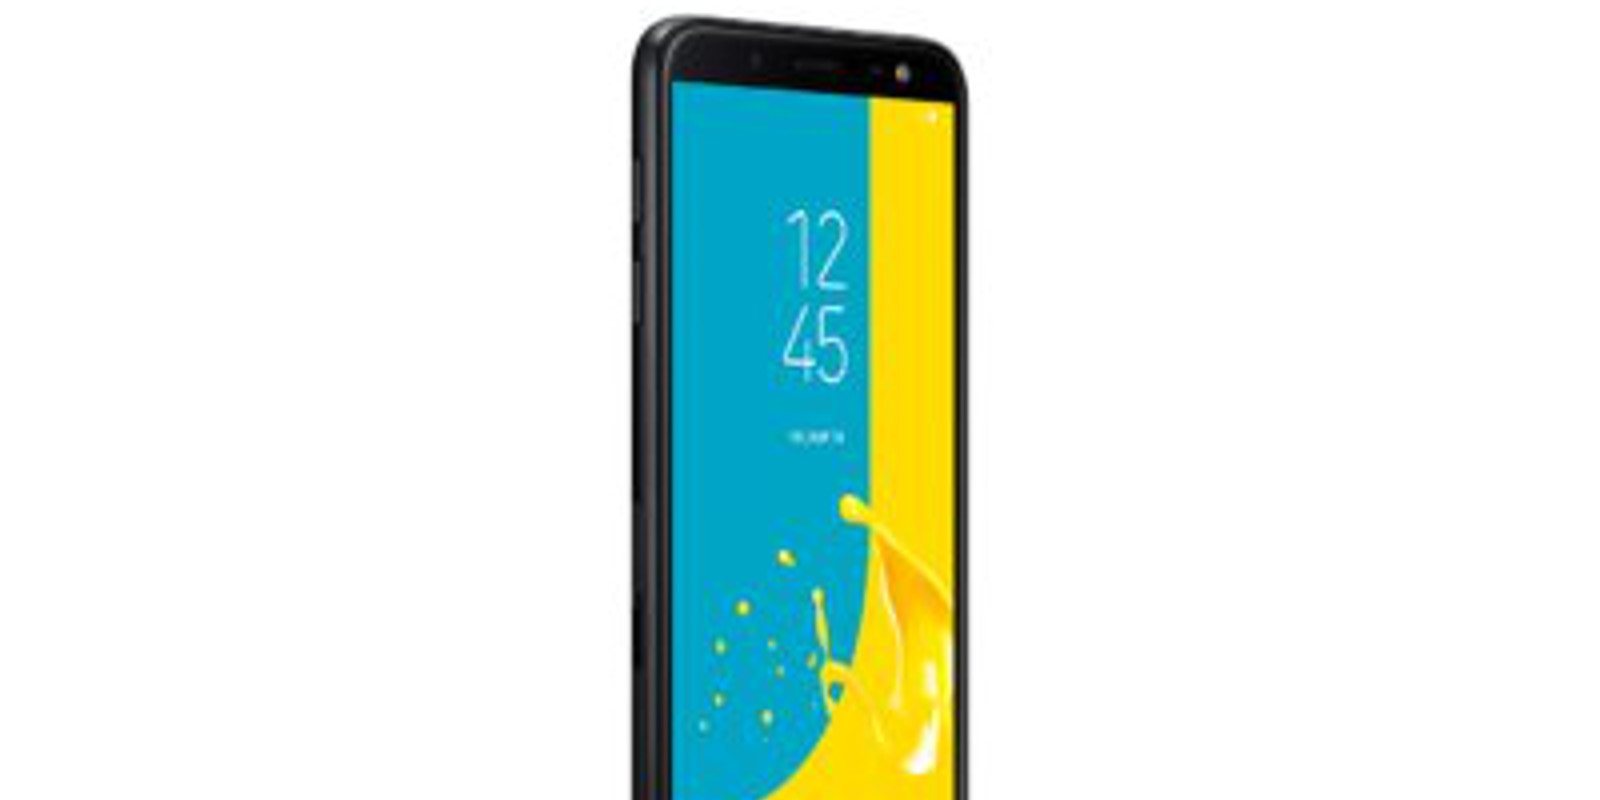 Samsung Galaxy J6: Todo sobre el nuevo gama media de Samsung